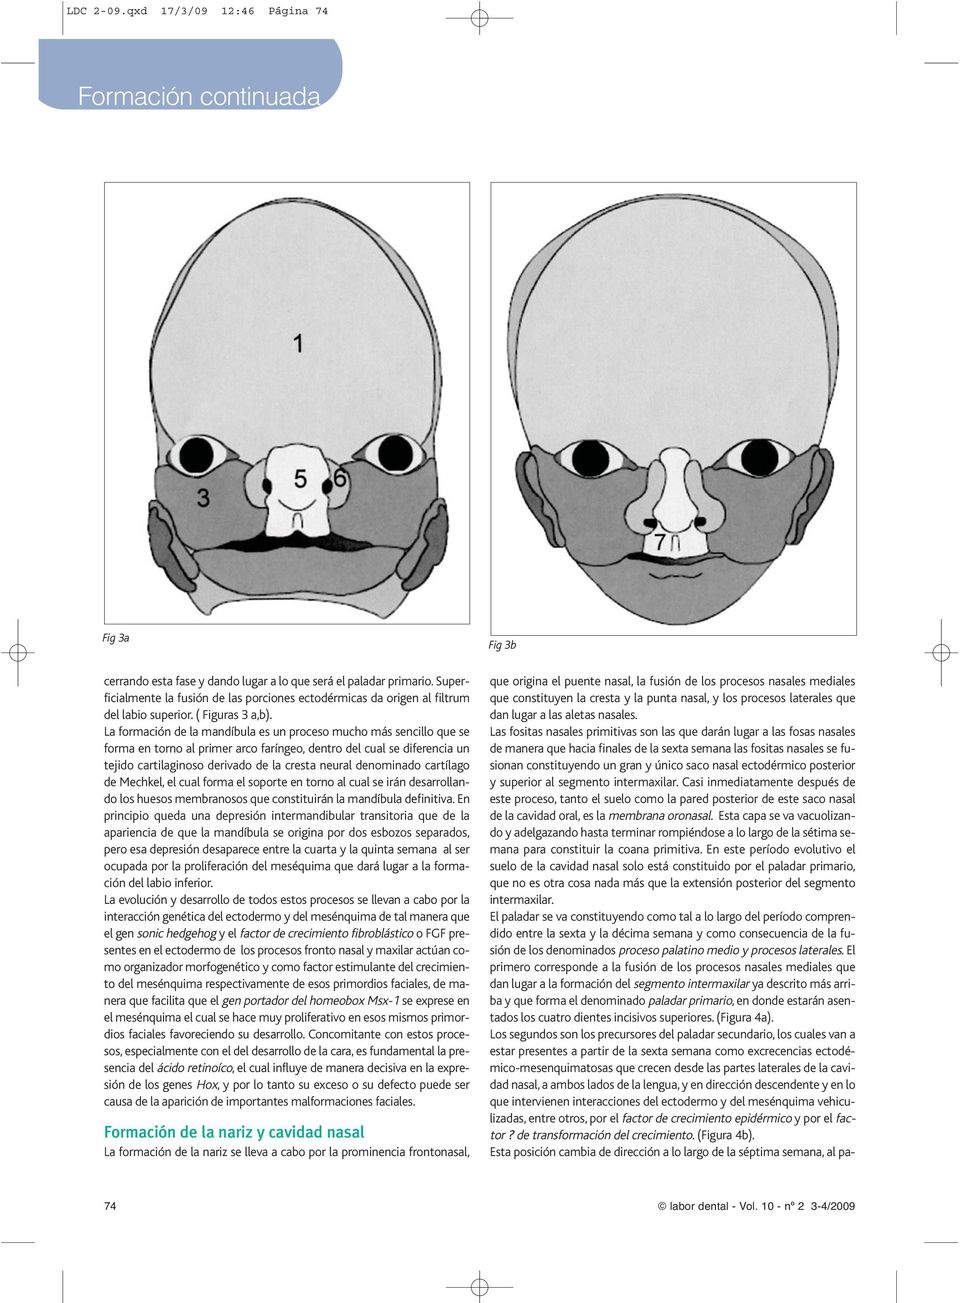 La formación de la mandíbula es un proceso mucho más sencillo que se forma en torno al primer arco faríngeo, dentro del cual se diferencia un tejido cartilaginoso derivado de la cresta neural